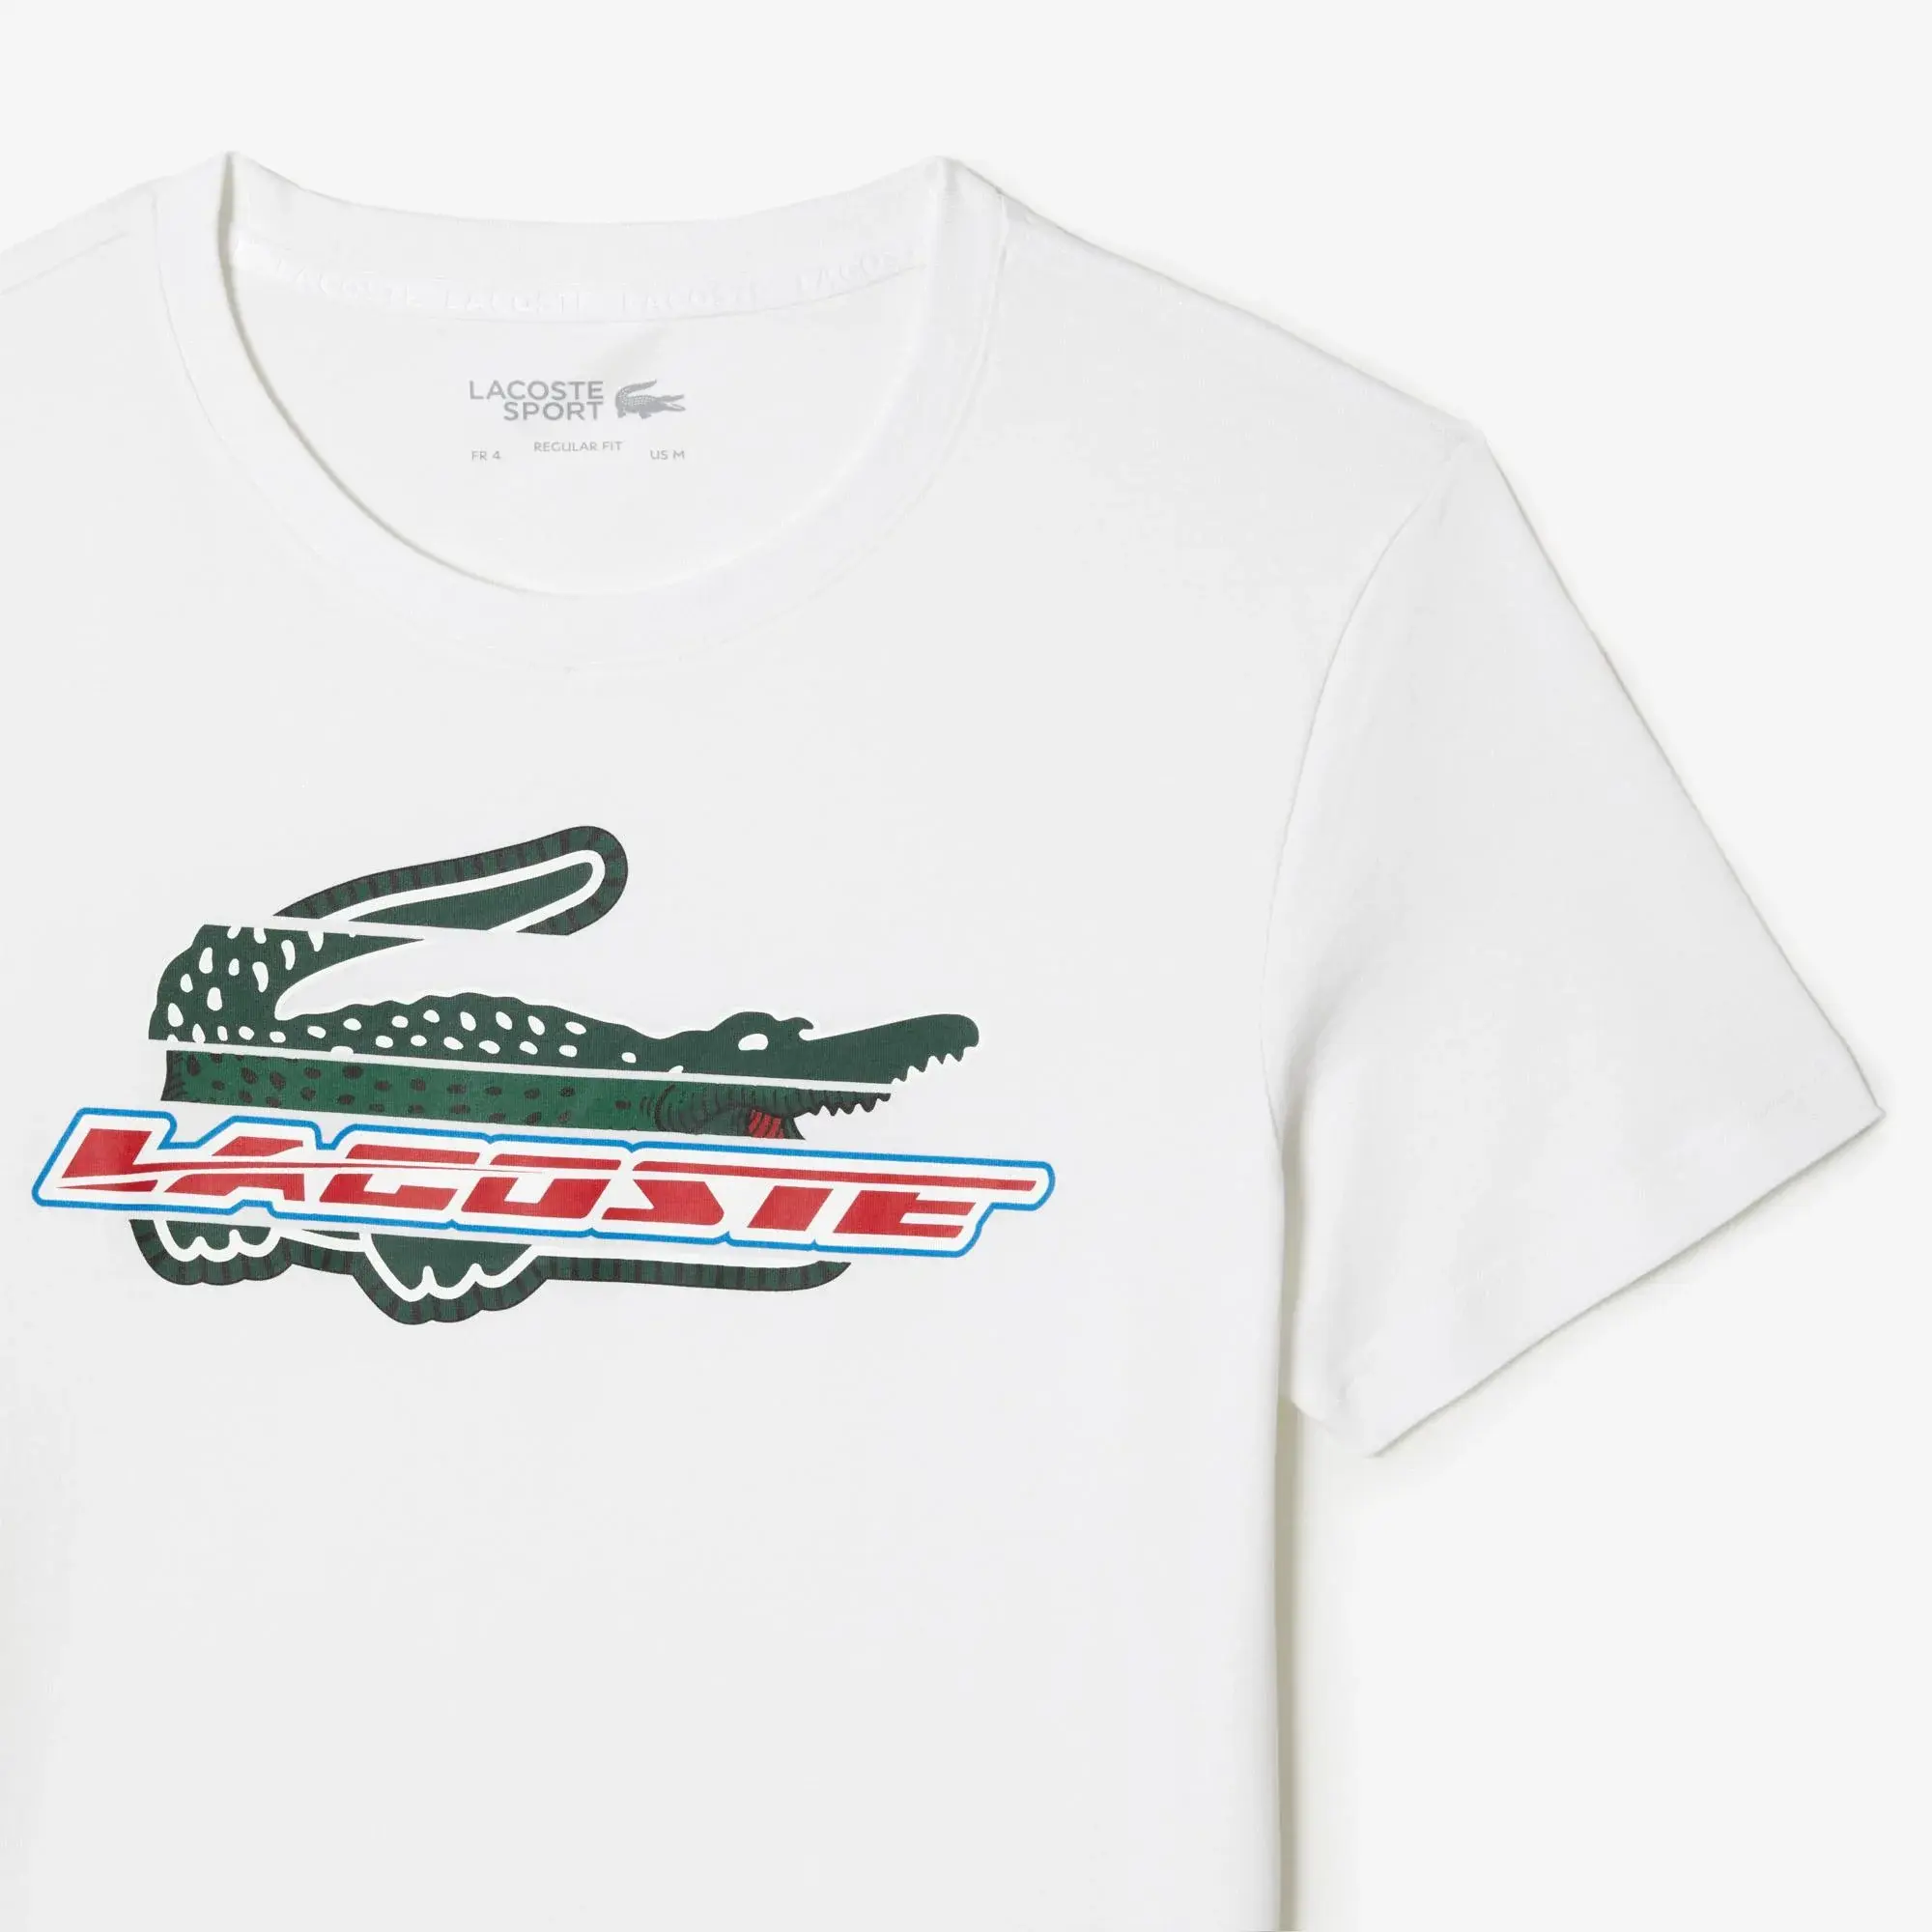 Lacoste Erkek Sport Regular Fit Organik Pamuk Baskılı Beyaz T-shirt. 2